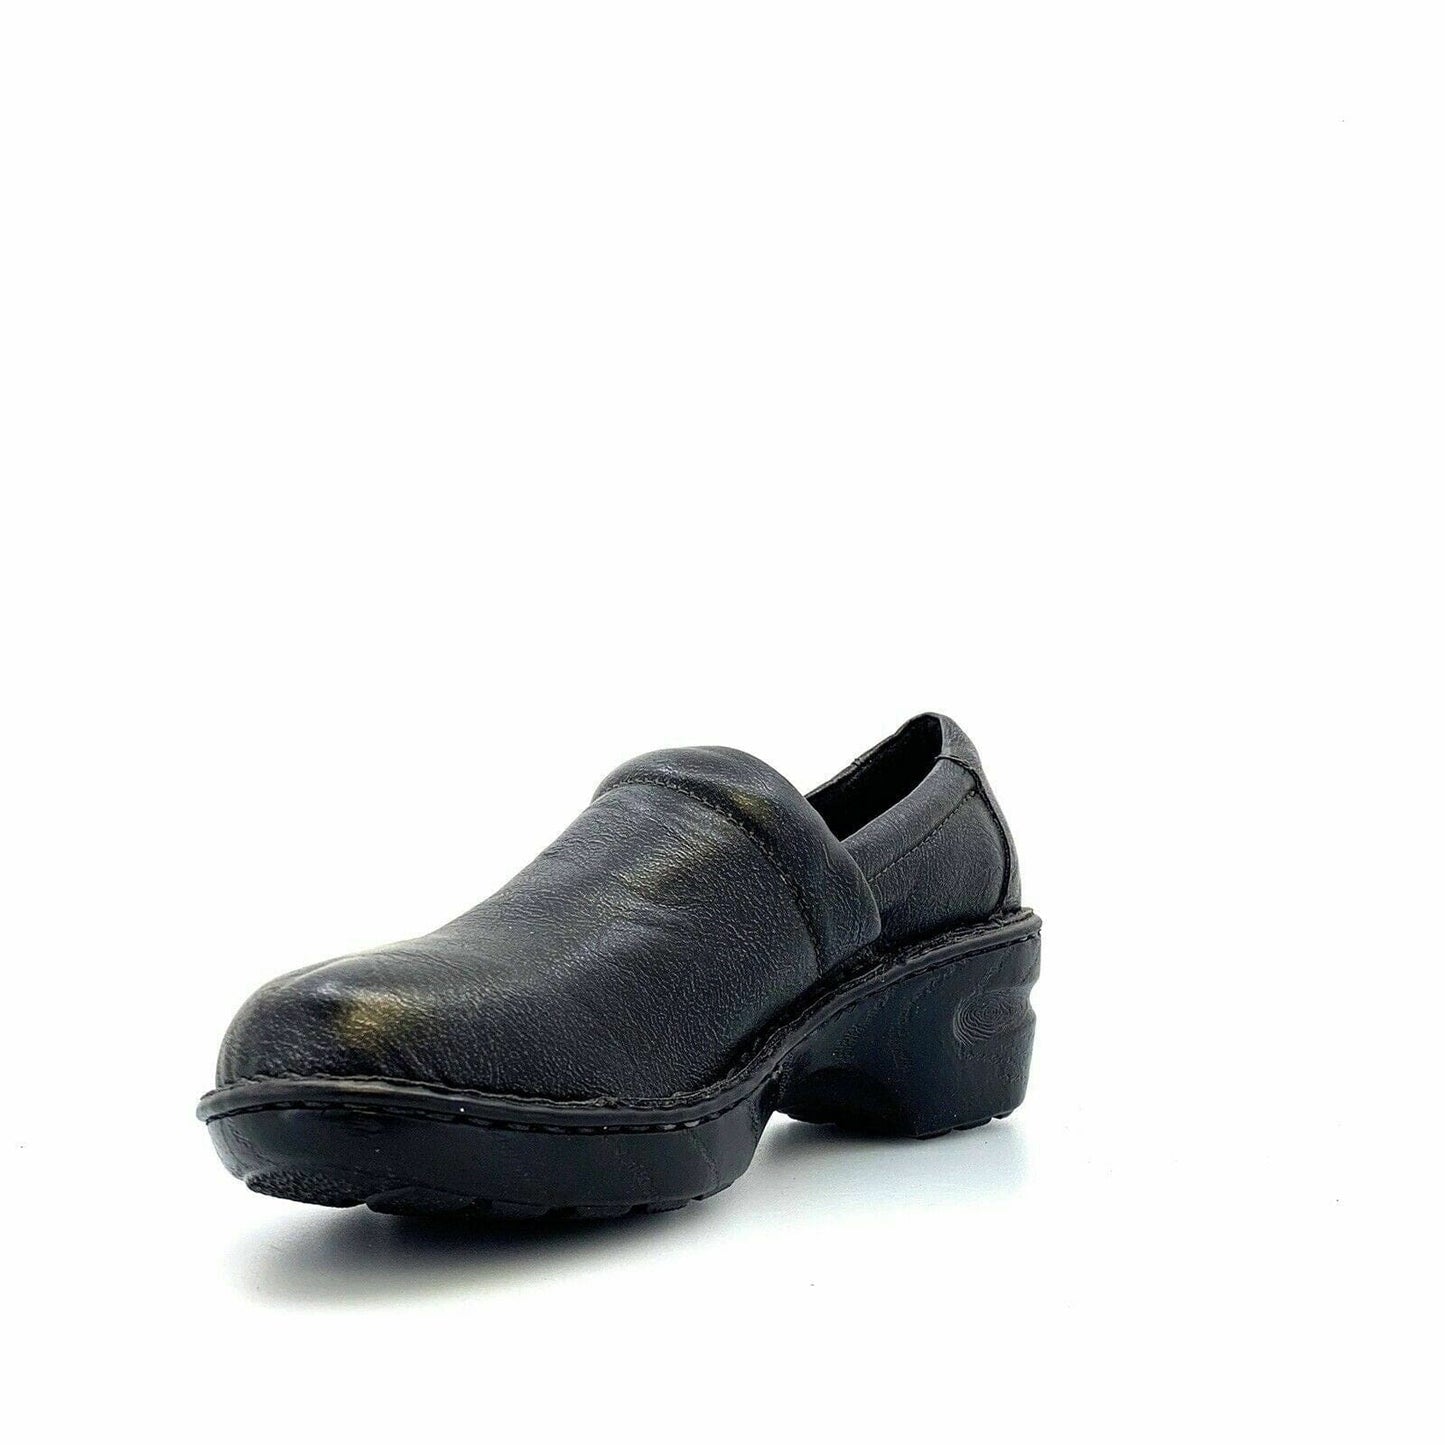 Boc Born Concept Womens Size 9 Drak Gray Clogs Shoes Leather Comfort